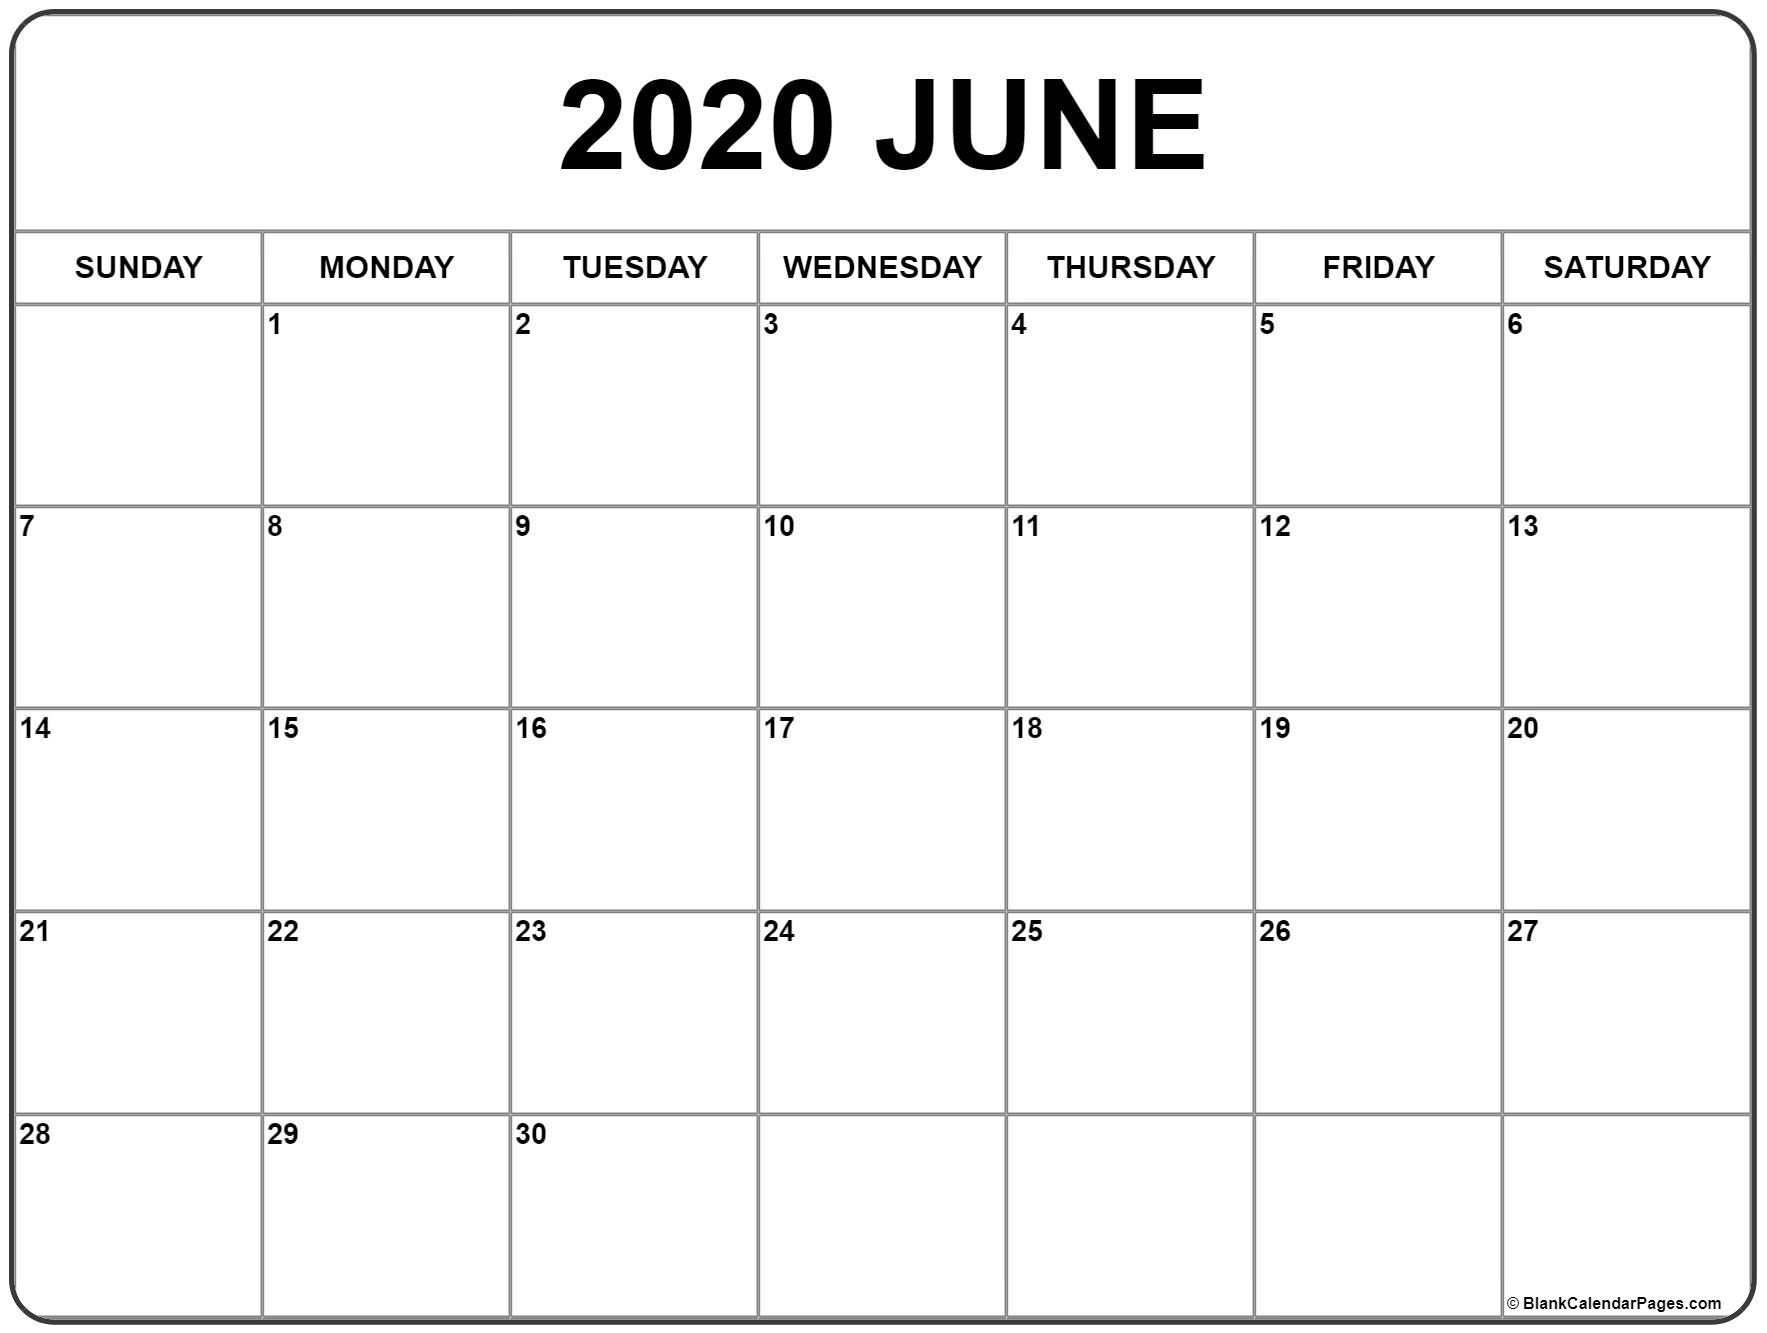 June 2020 Calendar | Free Printable Monthly Calendars Incredible June 2020 Calendar Canada